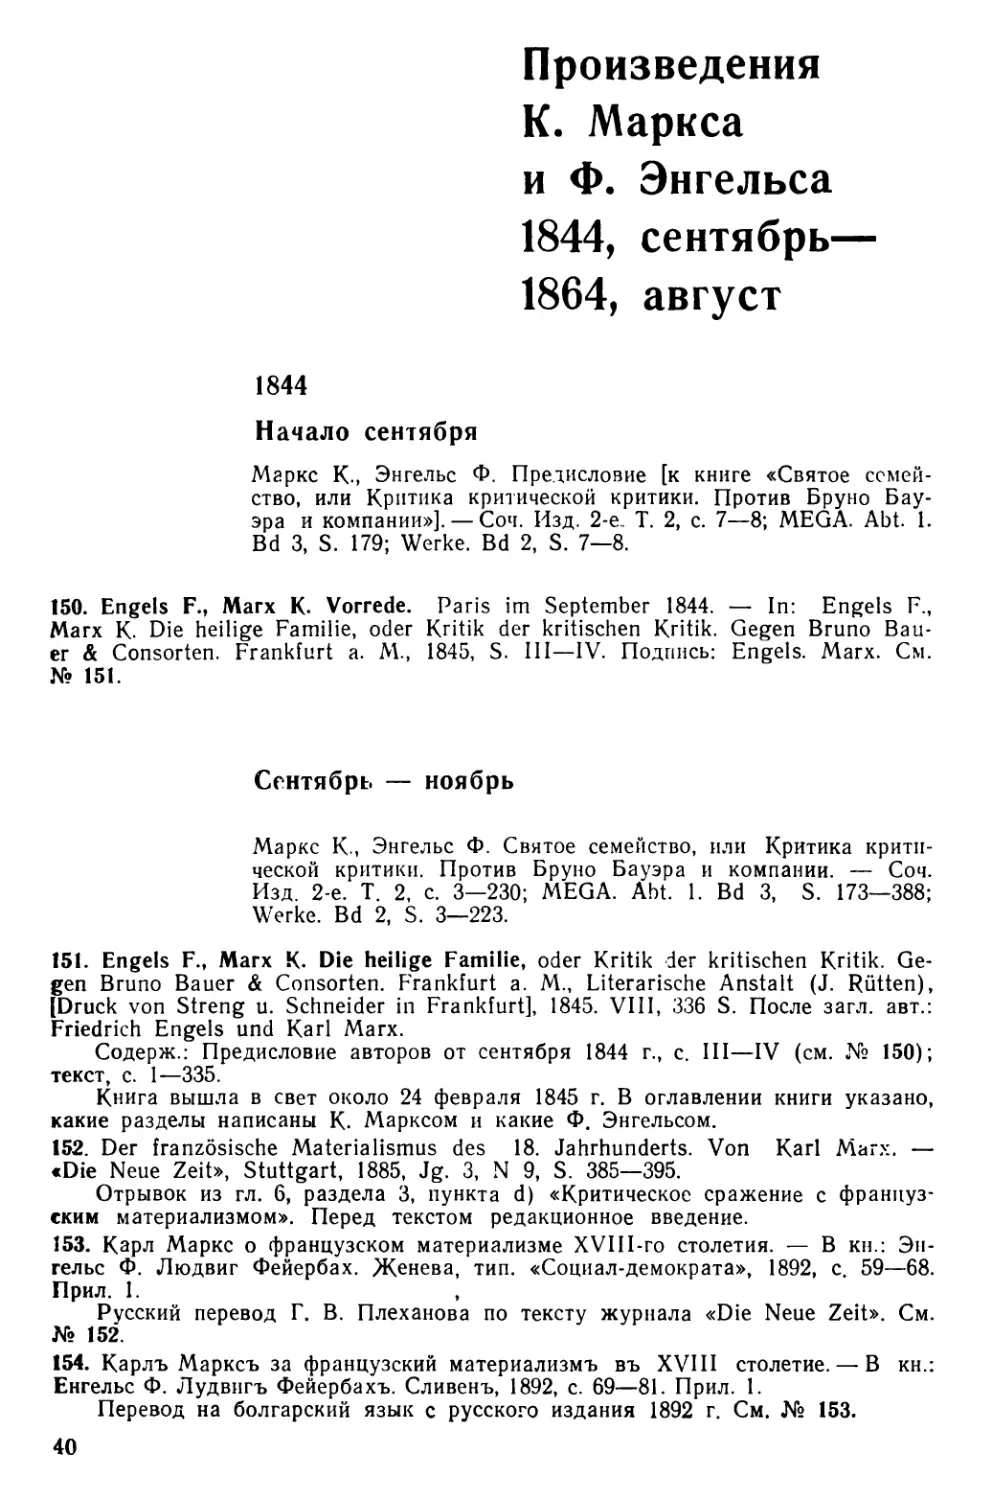 Произведения К. Маркса и Ф. Энгельса. 1844, сентябрь — 1864, август
1844